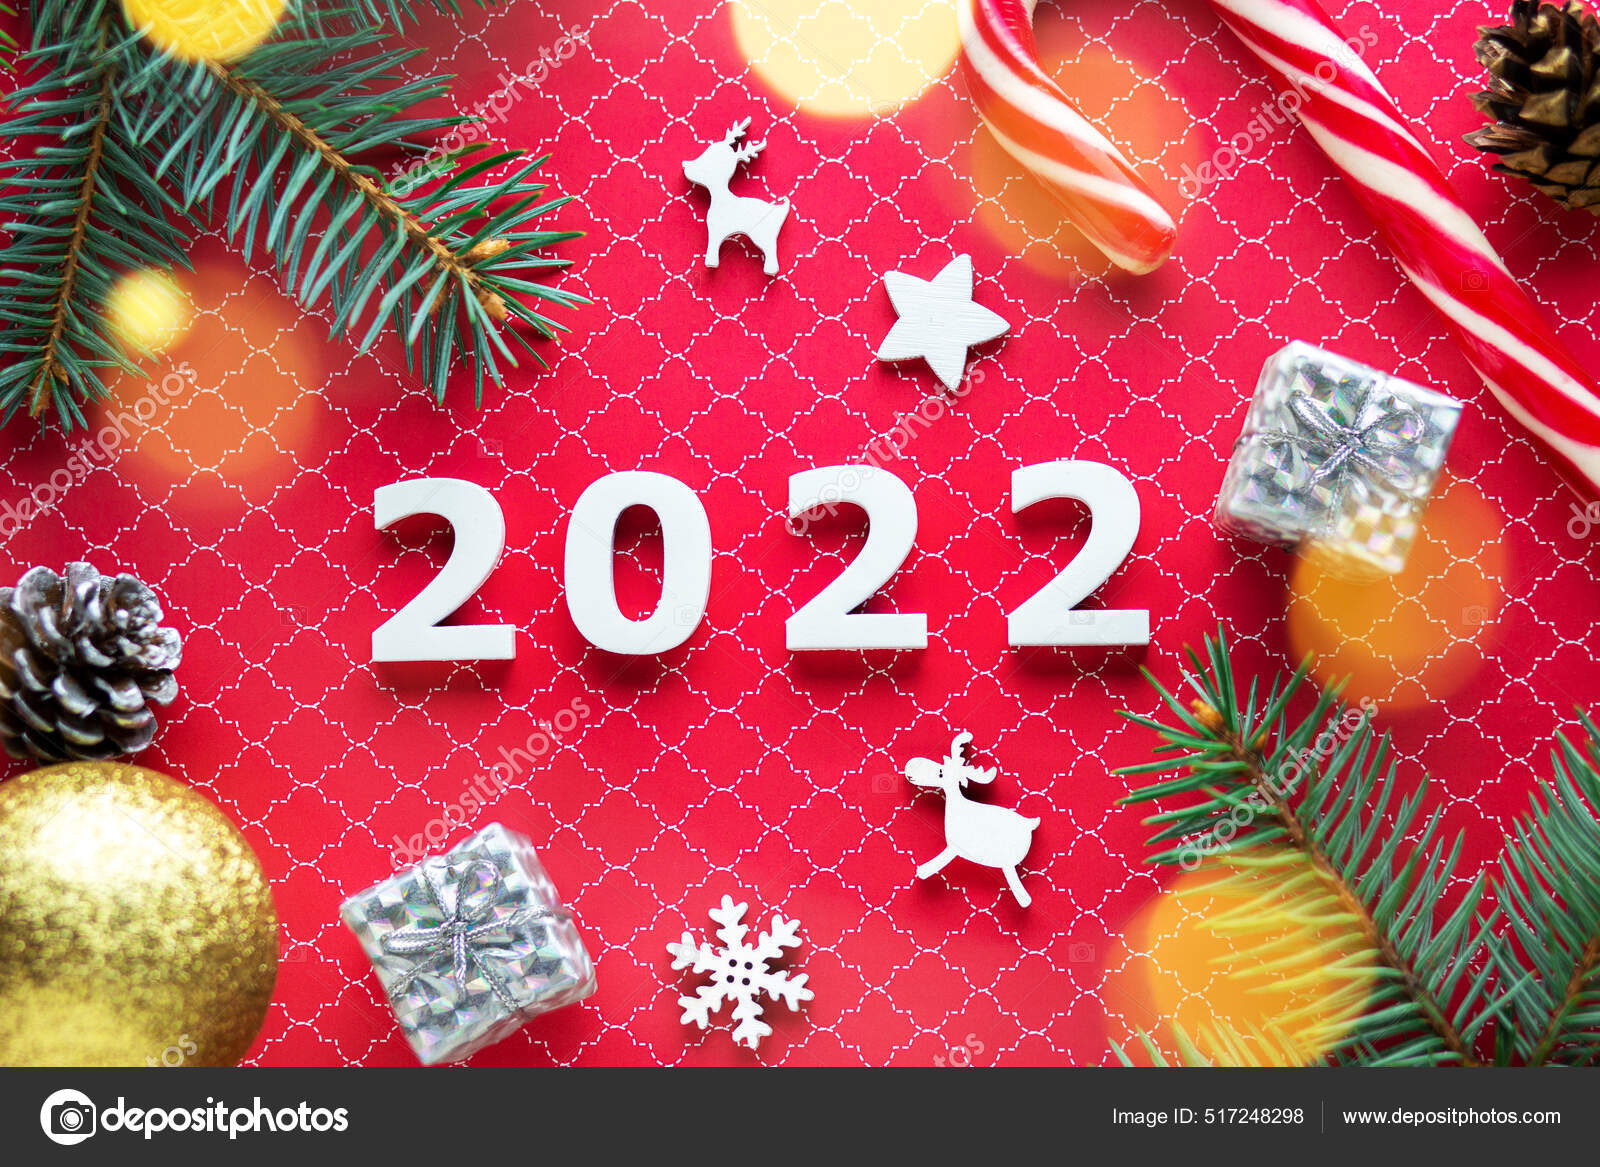 Hãy cùng chúc mừng Giáng Sinh 2022 với những hình ảnh tươi vui đầy màu sắc. Chắc chắn bạn sẽ thấy niềm vui và ấm áp trong những khoảnh khắc này.